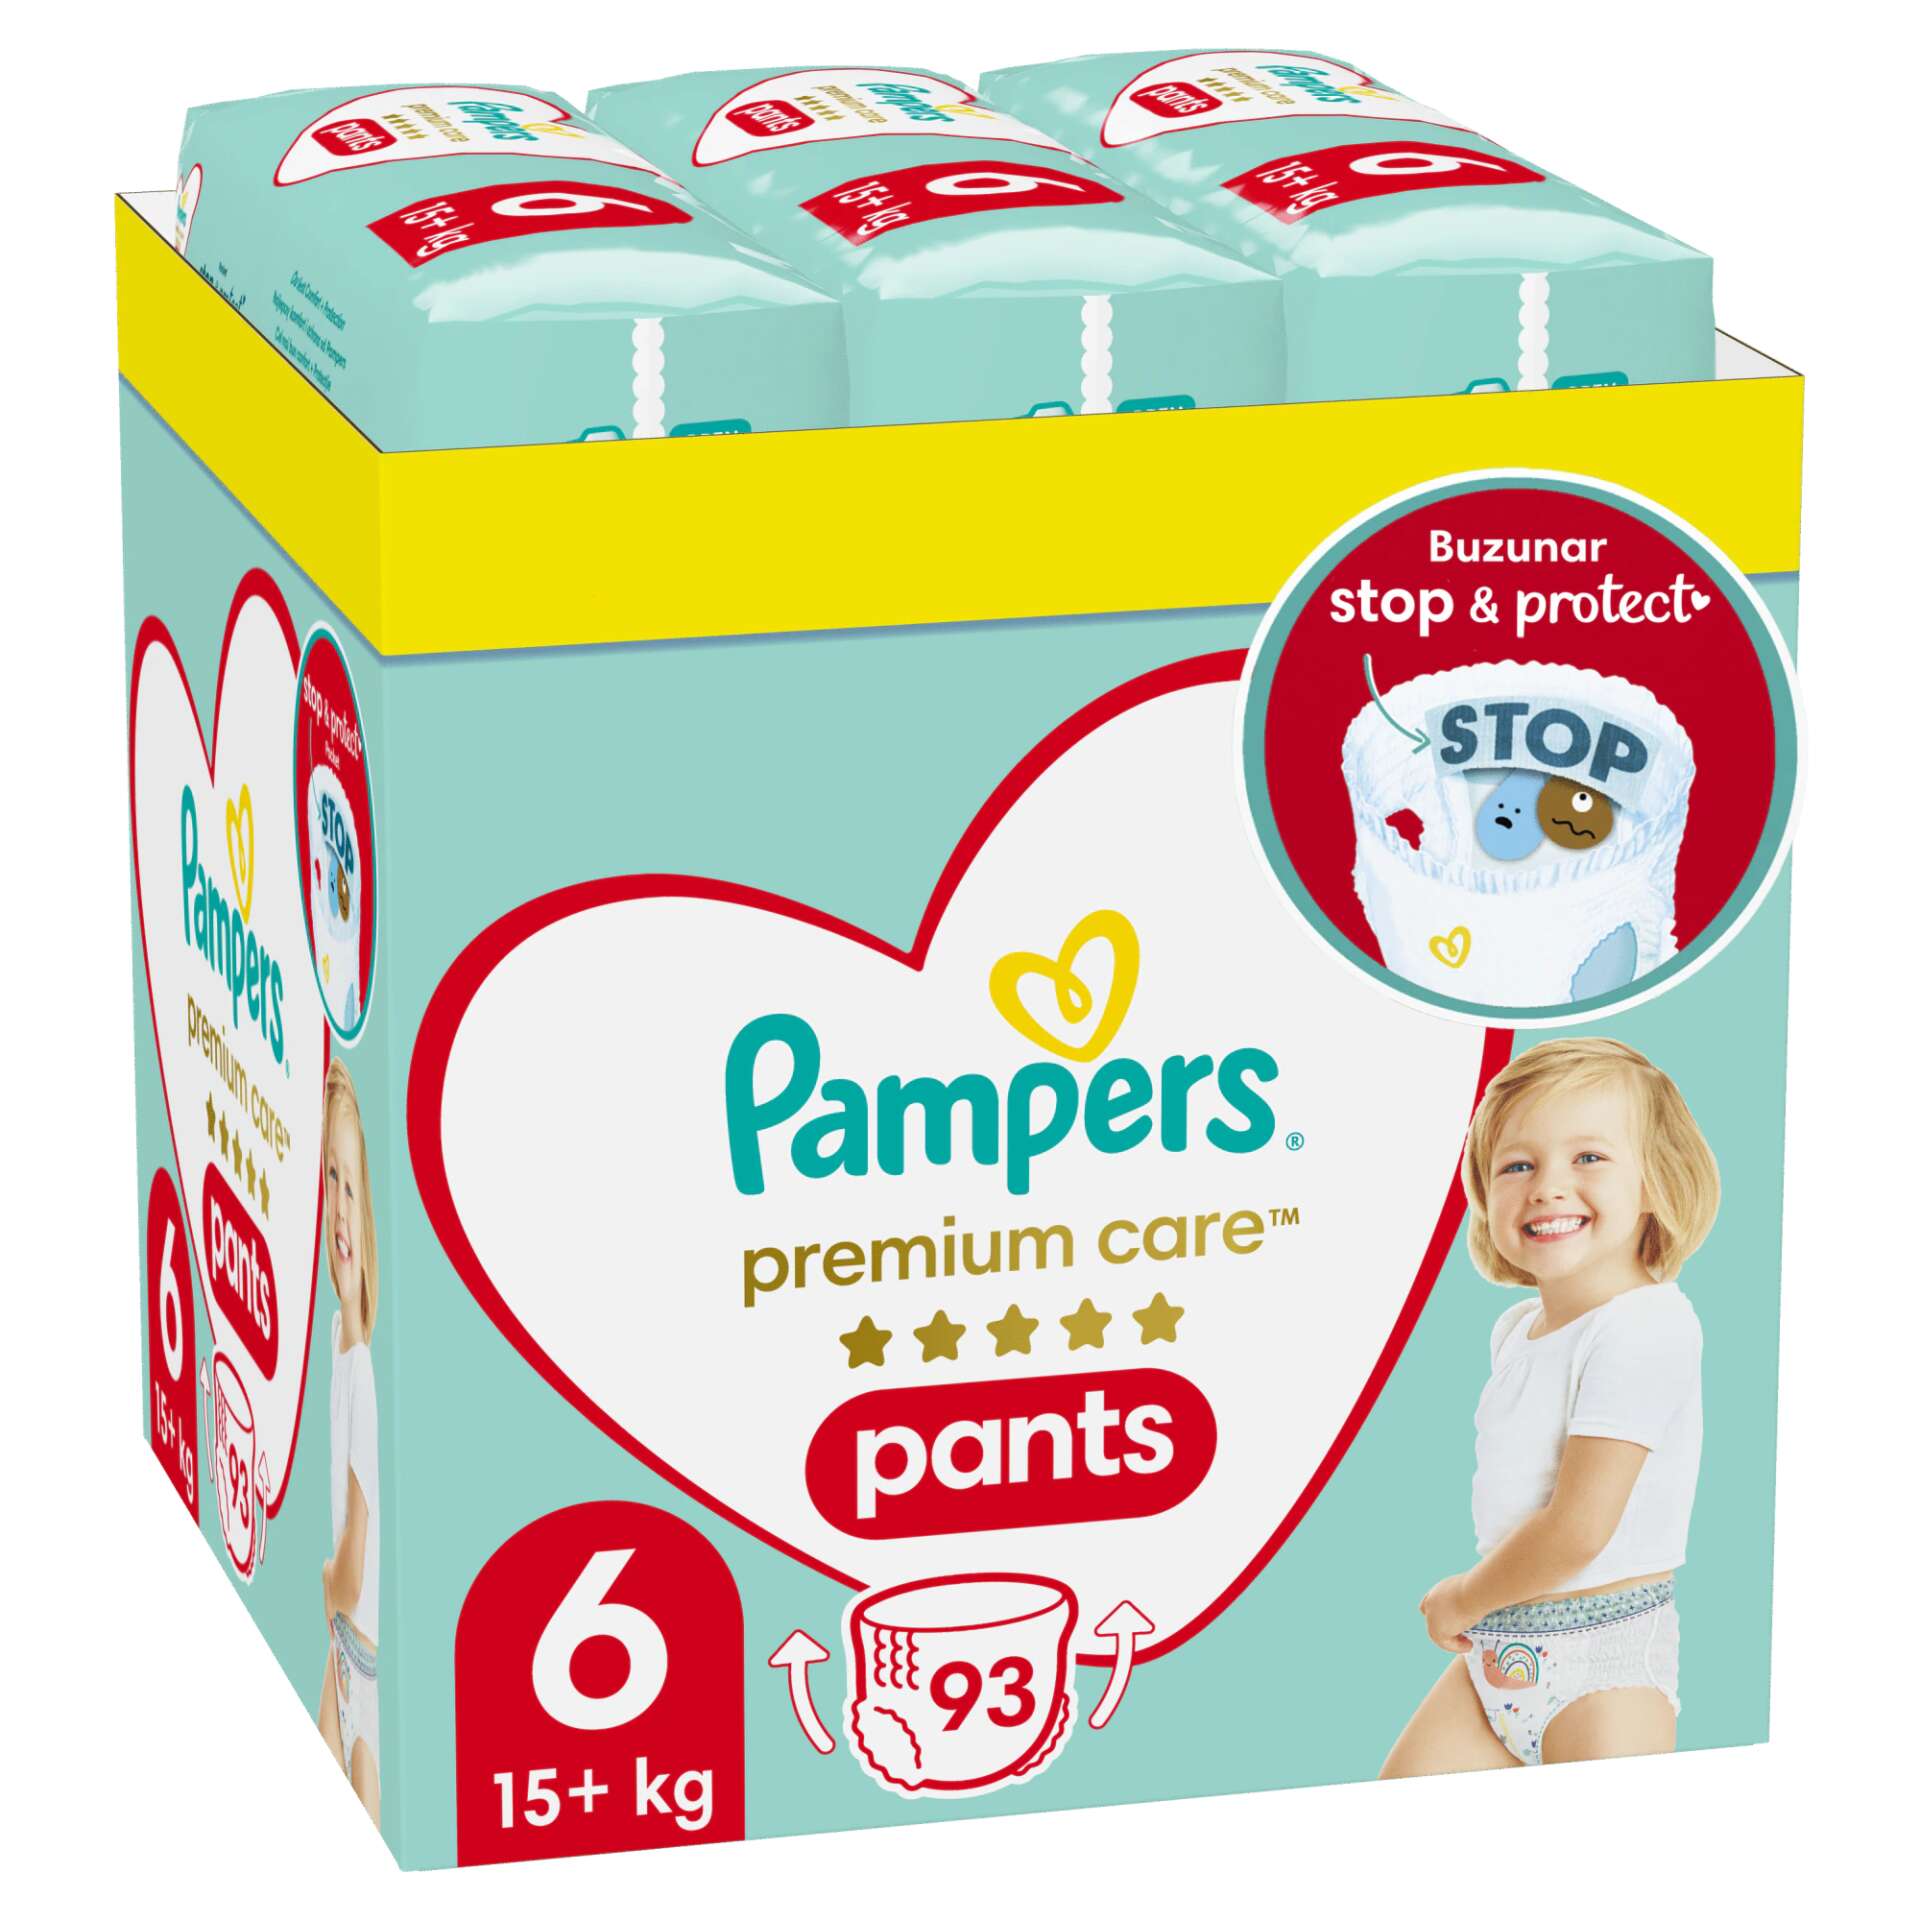 Pampers Premium Care Pants havi Pelenkacsomag 15kg+ Junior 6 (93db)